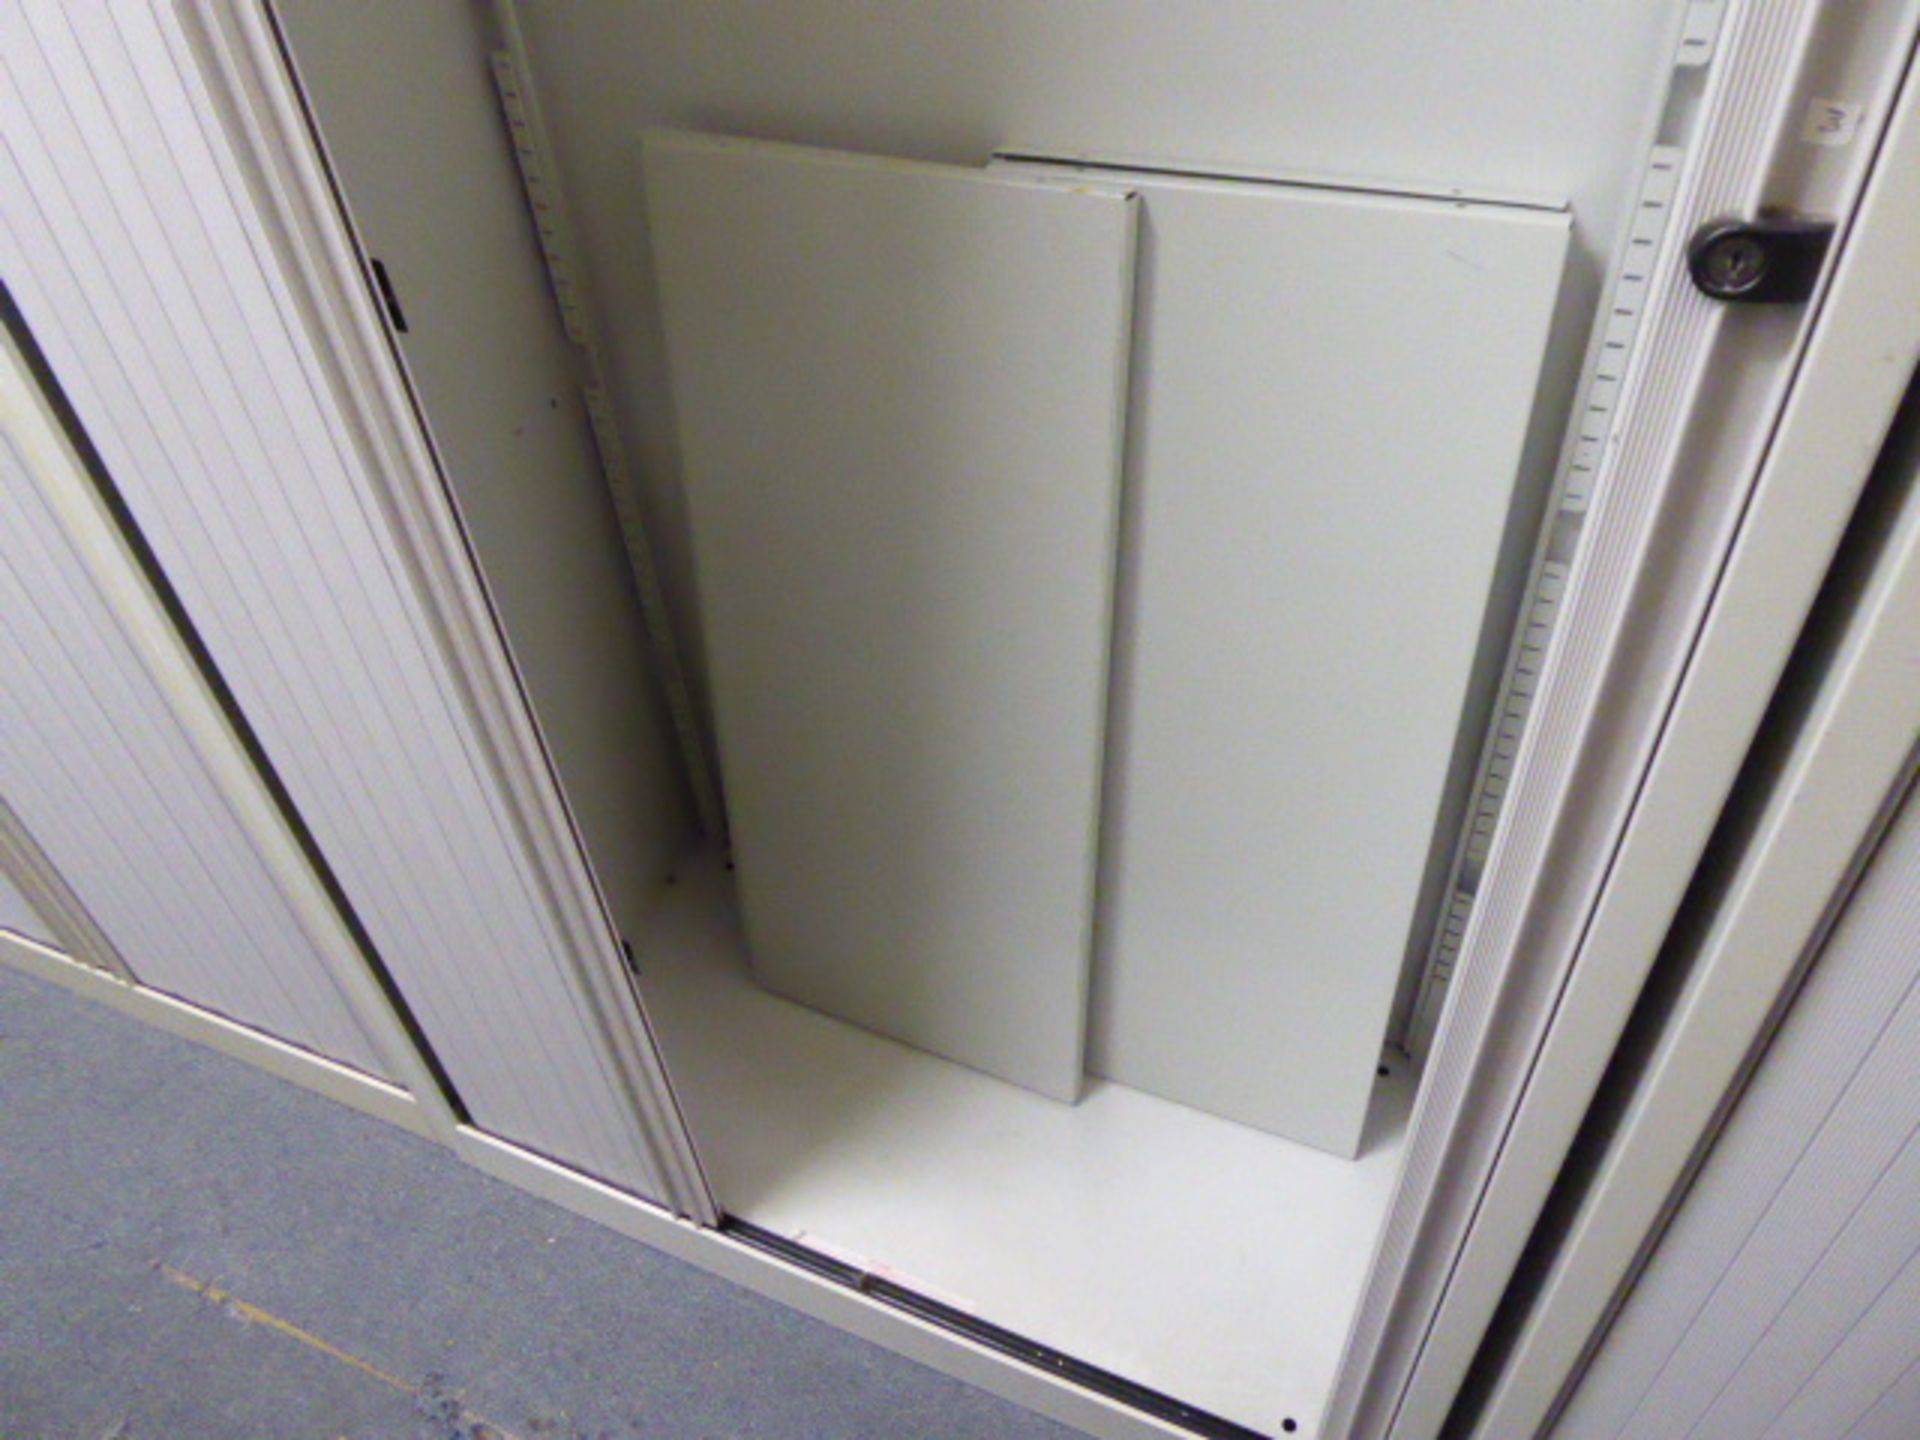 100cm Bisley grey double door tambour storage cabinet - Image 2 of 2